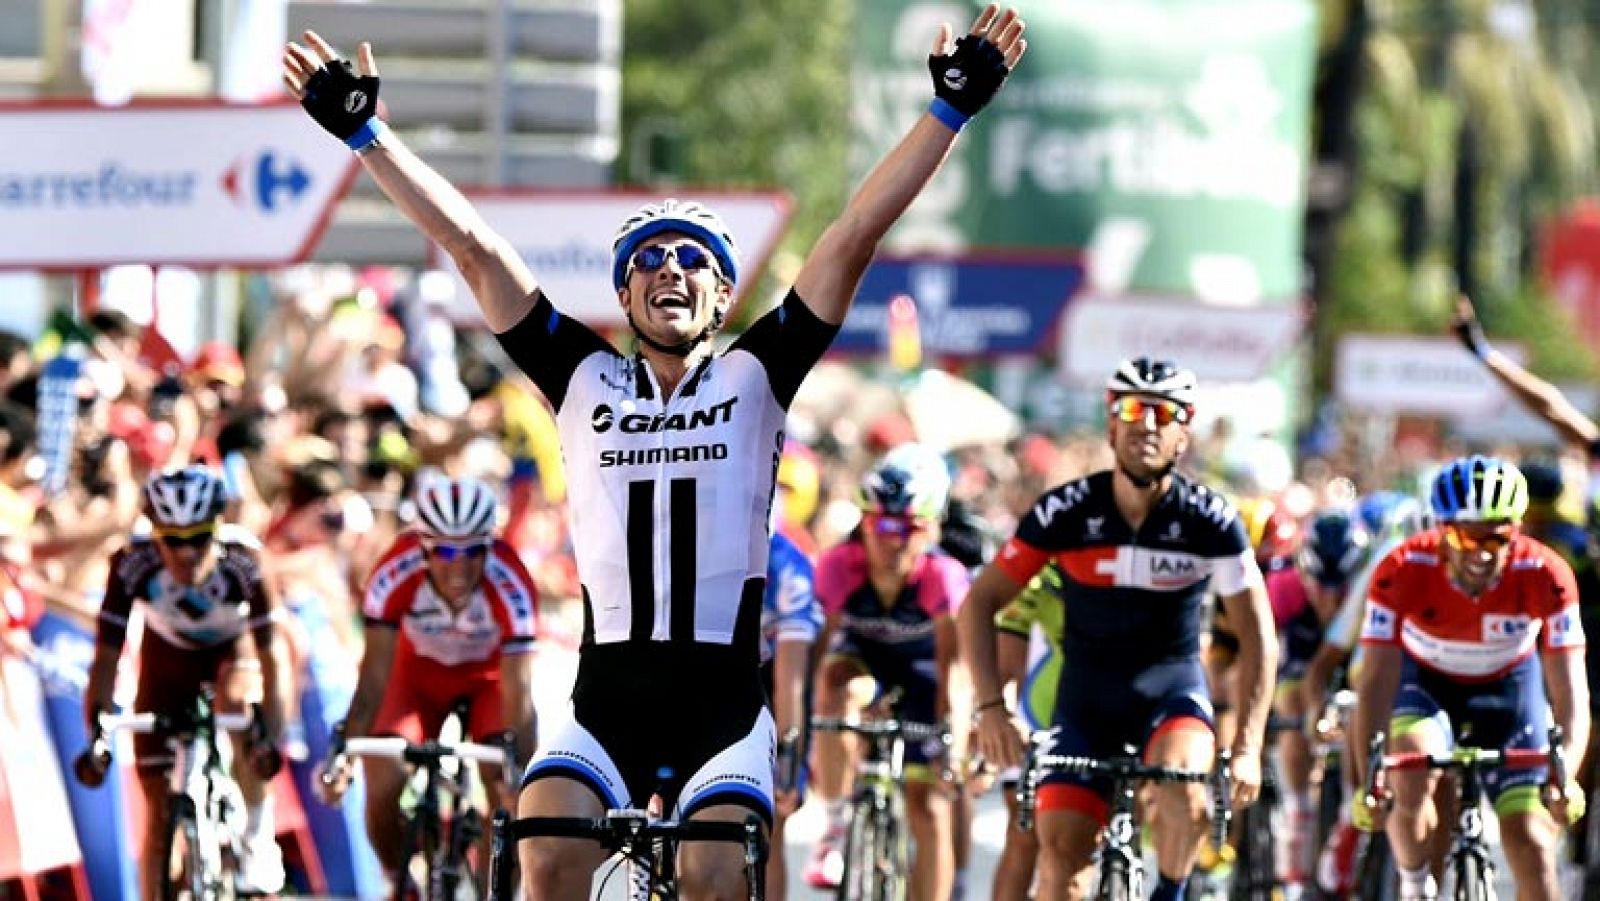 El alemán John Degenkolb, del equipo Giant Shimano, ha ganado la cuarta etapa de la Vuelta a España disputada entre Mairena del Alcor y Córdoba, de 164,7 kilómetros, en la que mantuvo el liderato el australiano Michael Matthews (Orica)